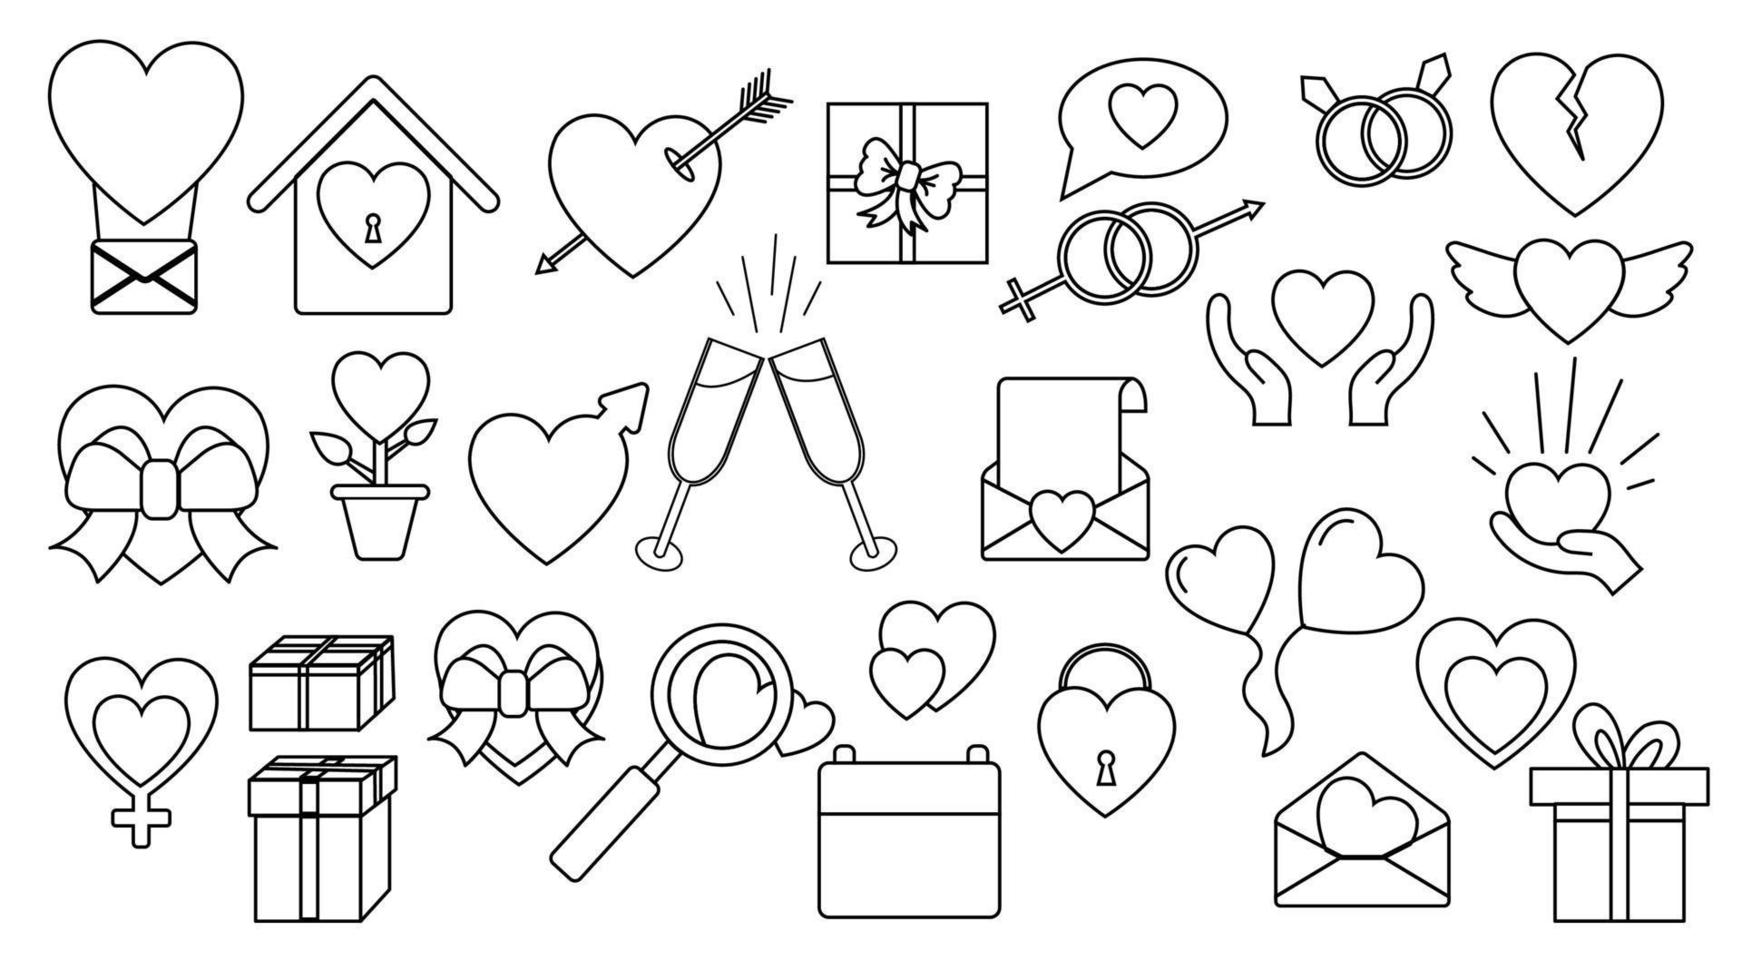 un ensemble de grandes icônes simples linéaires en noir et blanc de beaux coeurs, cadeaux, enveloppes, objets d'amour pour la fête de l'amour saint valentin le 14 février ou le 8 mars. illustration vectorielle vecteur